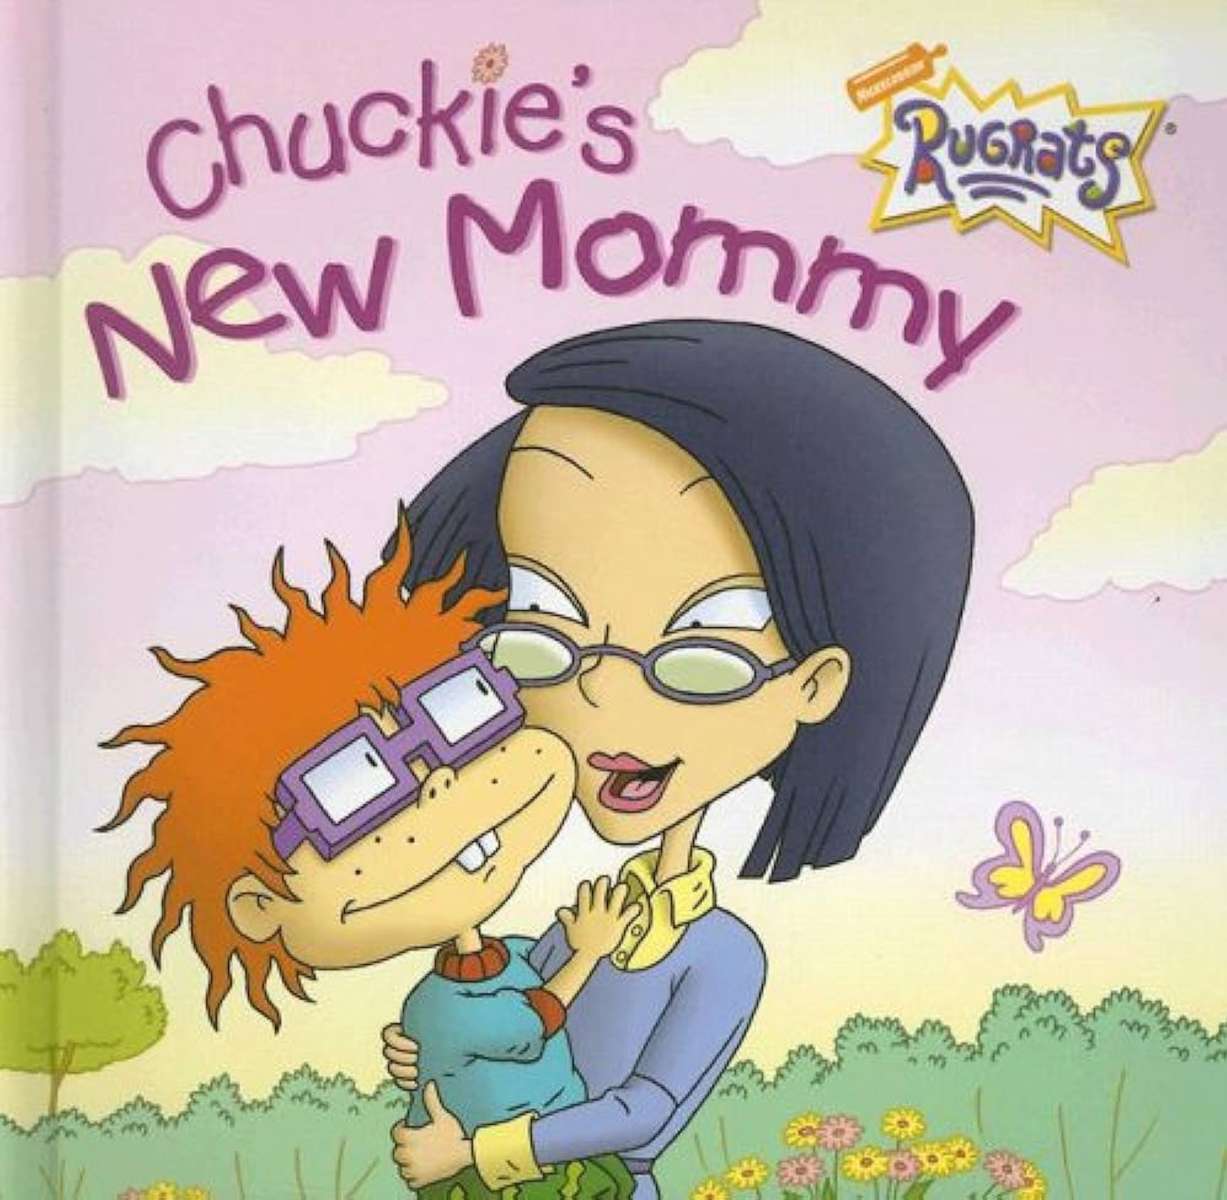 Chuckies nya mamma (Rugrats) pussel på nätet